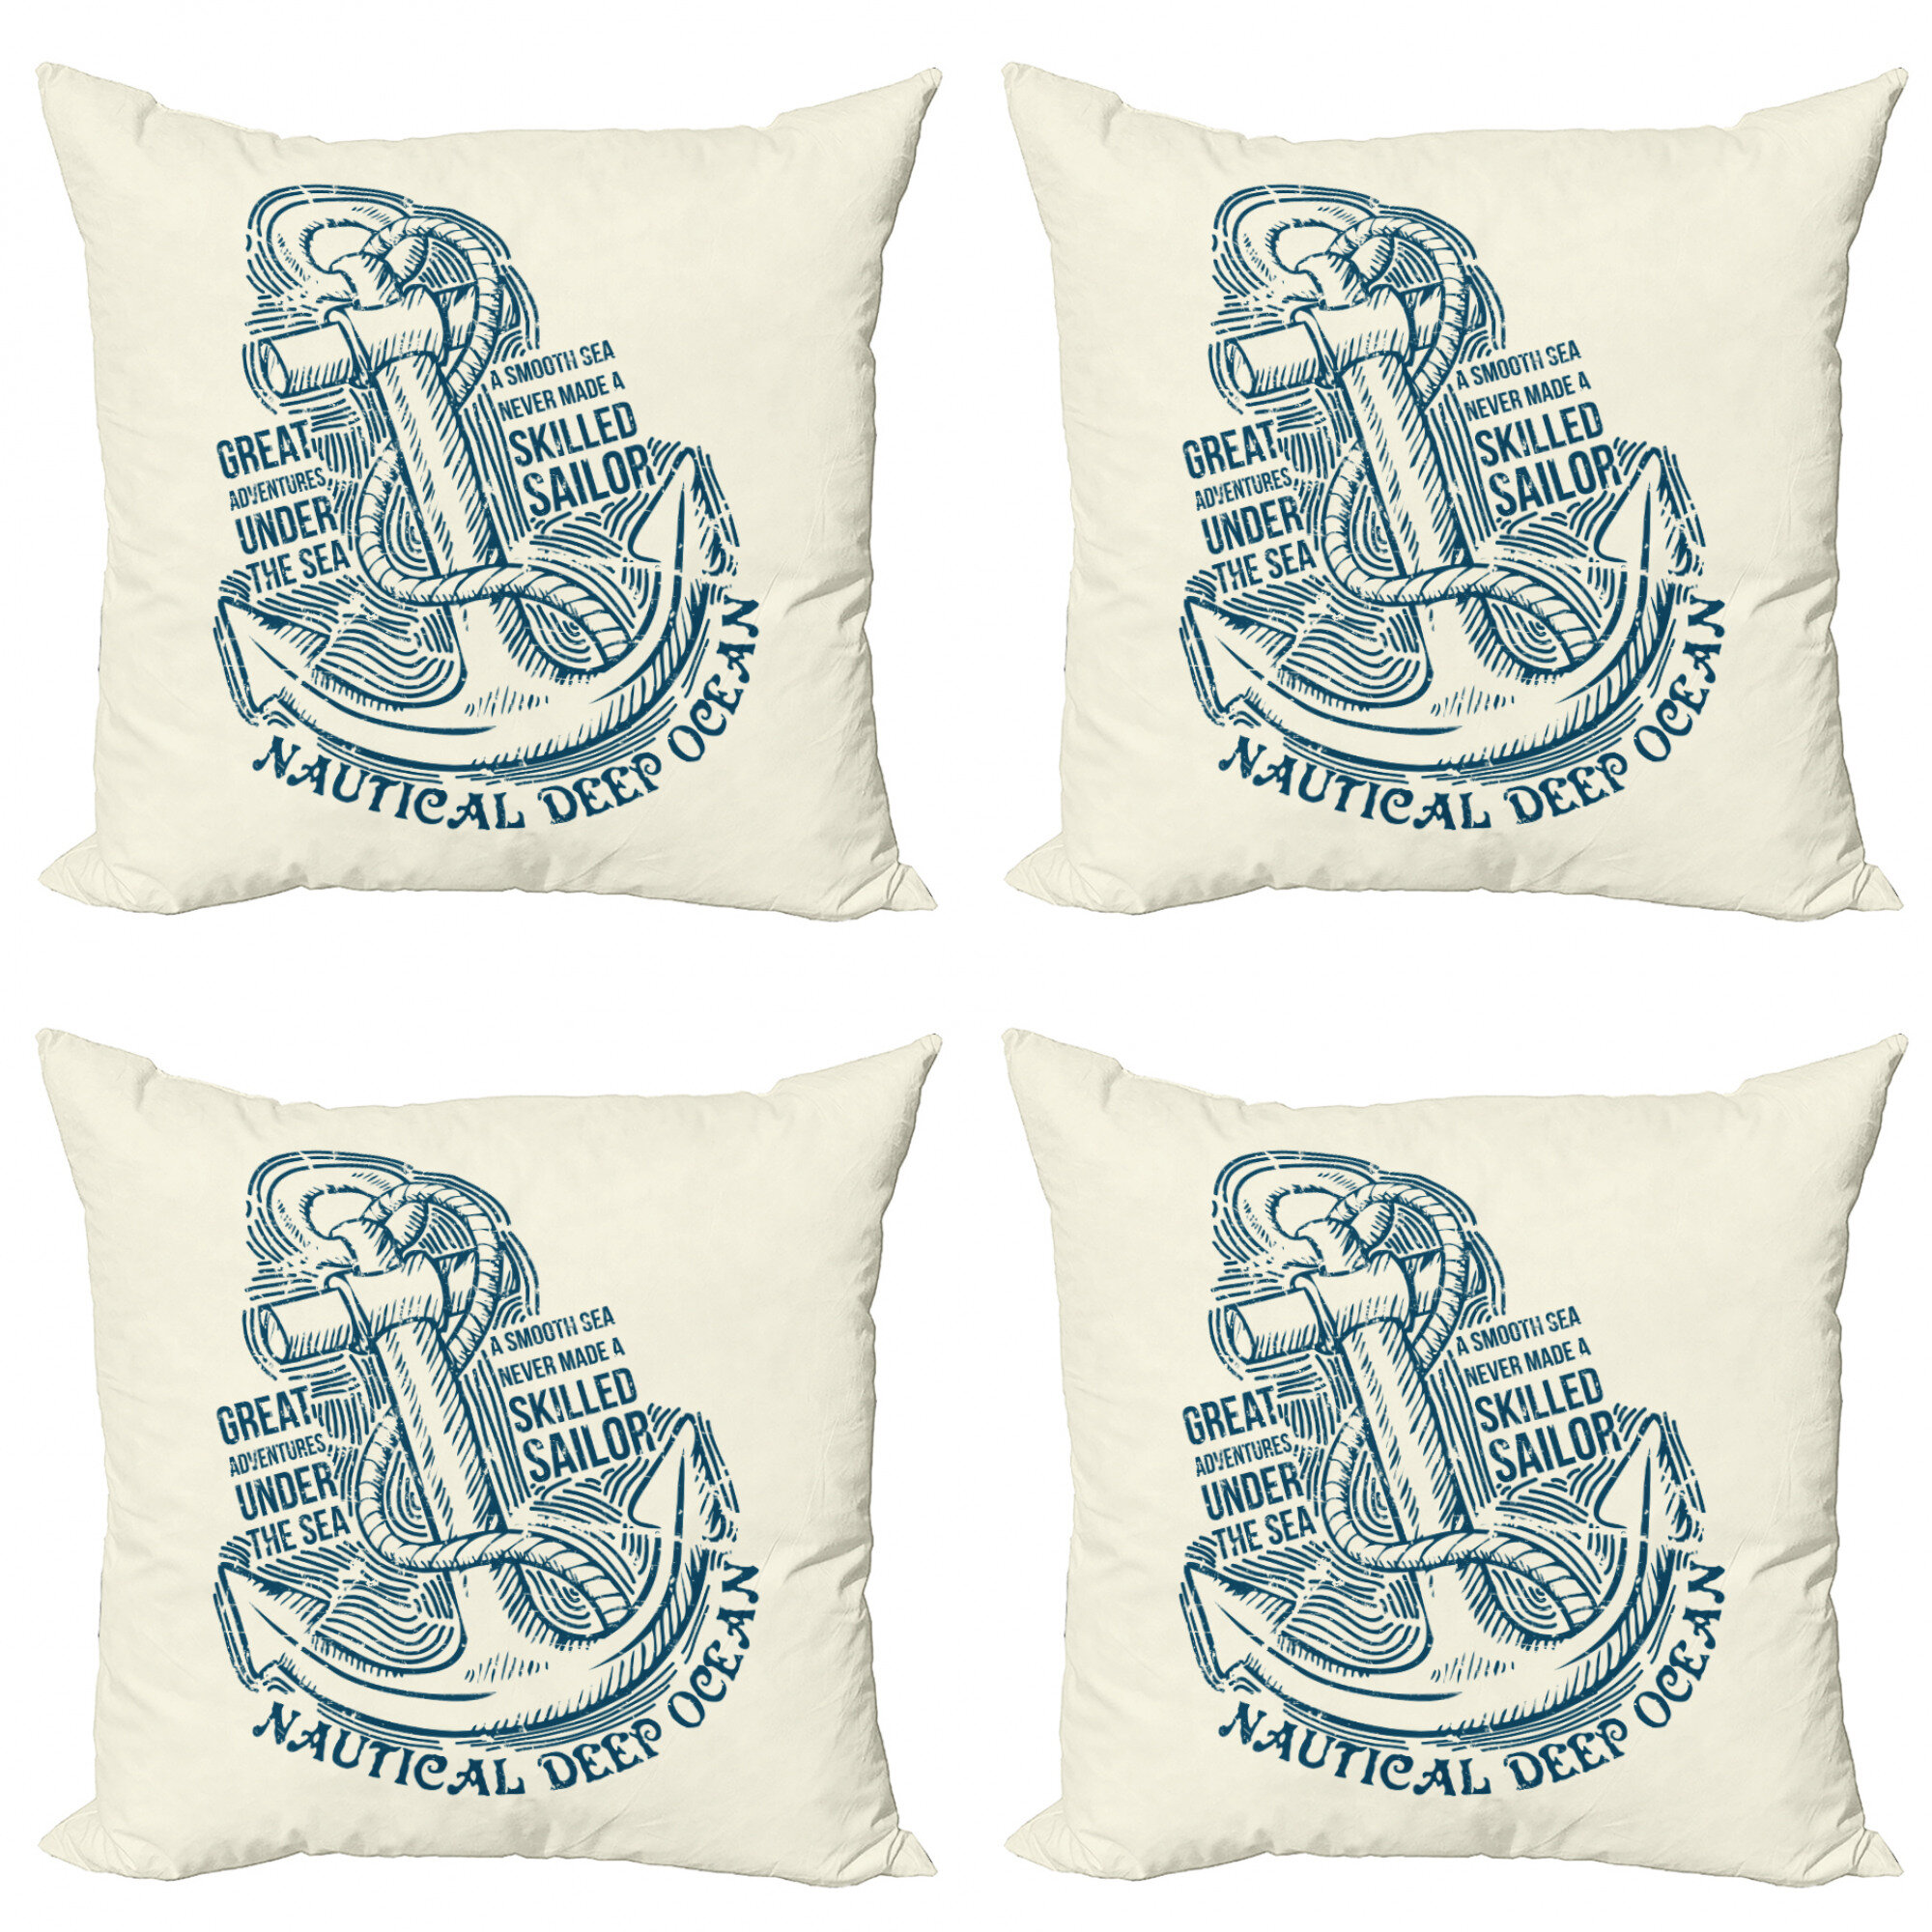 Throw Pillow Case Covers Set 4 Nautical Beach Sofa Home Decor Navy Blue Anchor 